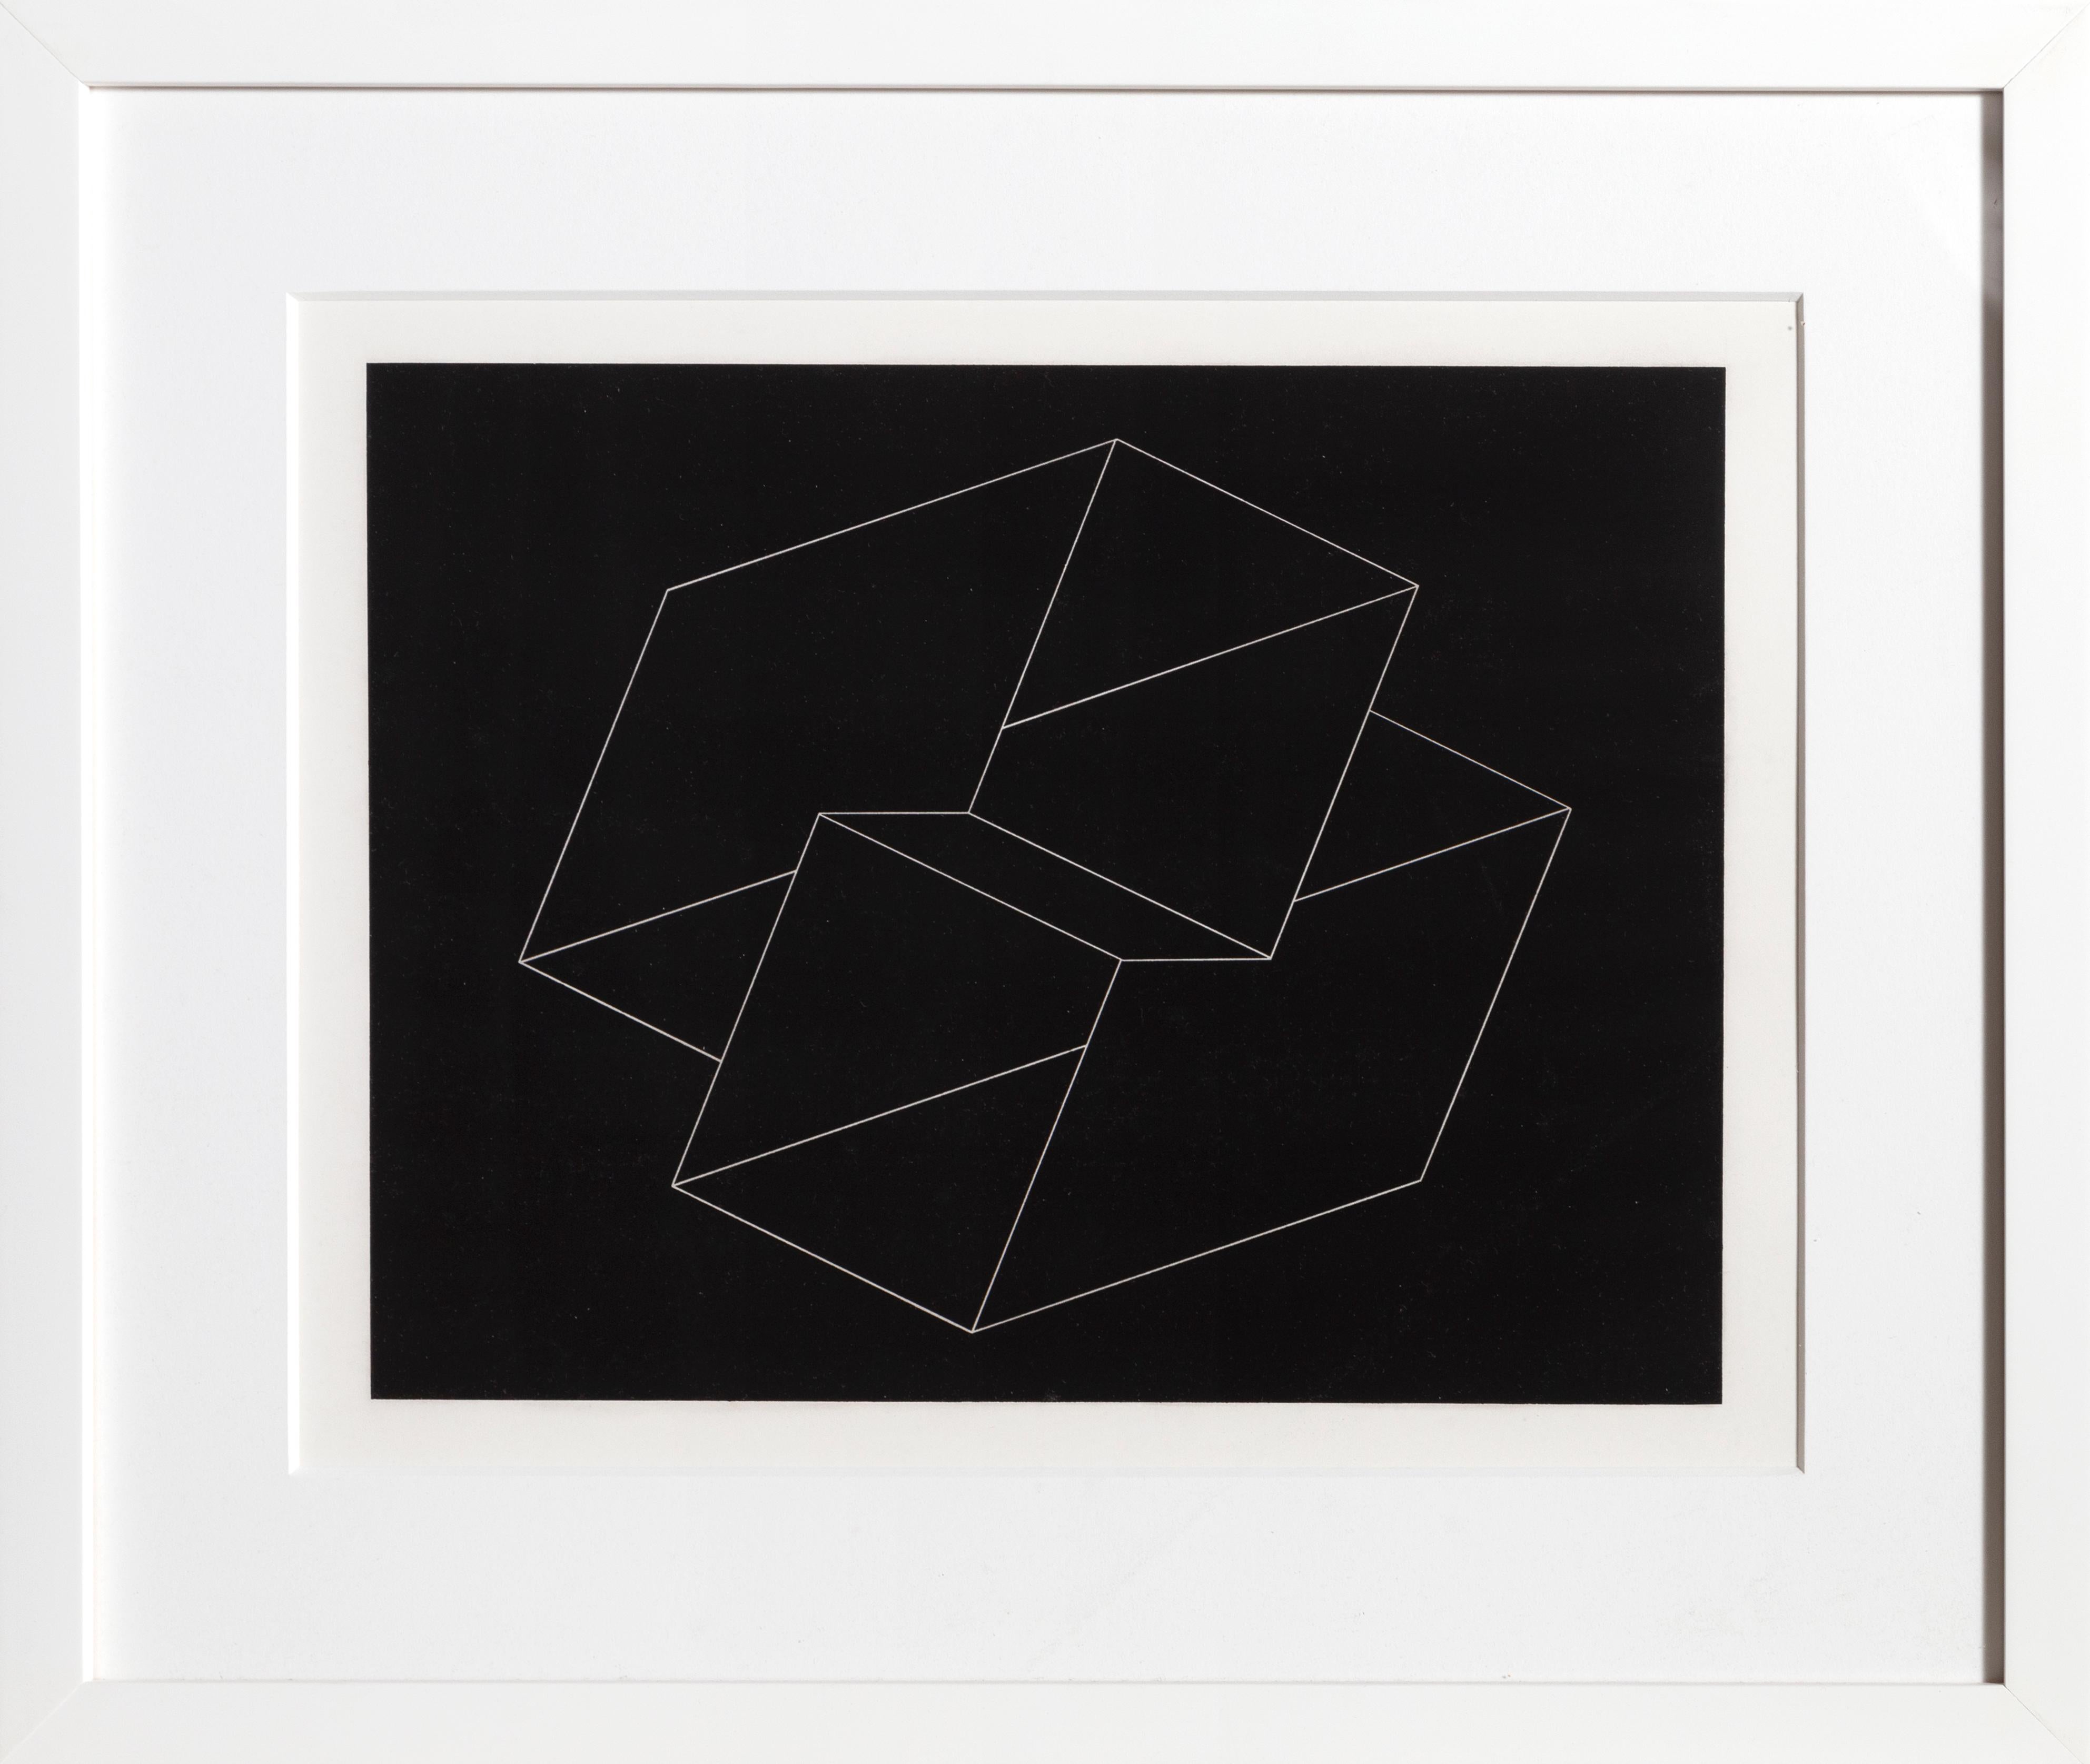 Abstract Print Josef Albers - Problème de construction linéaire - P2, F10, I1